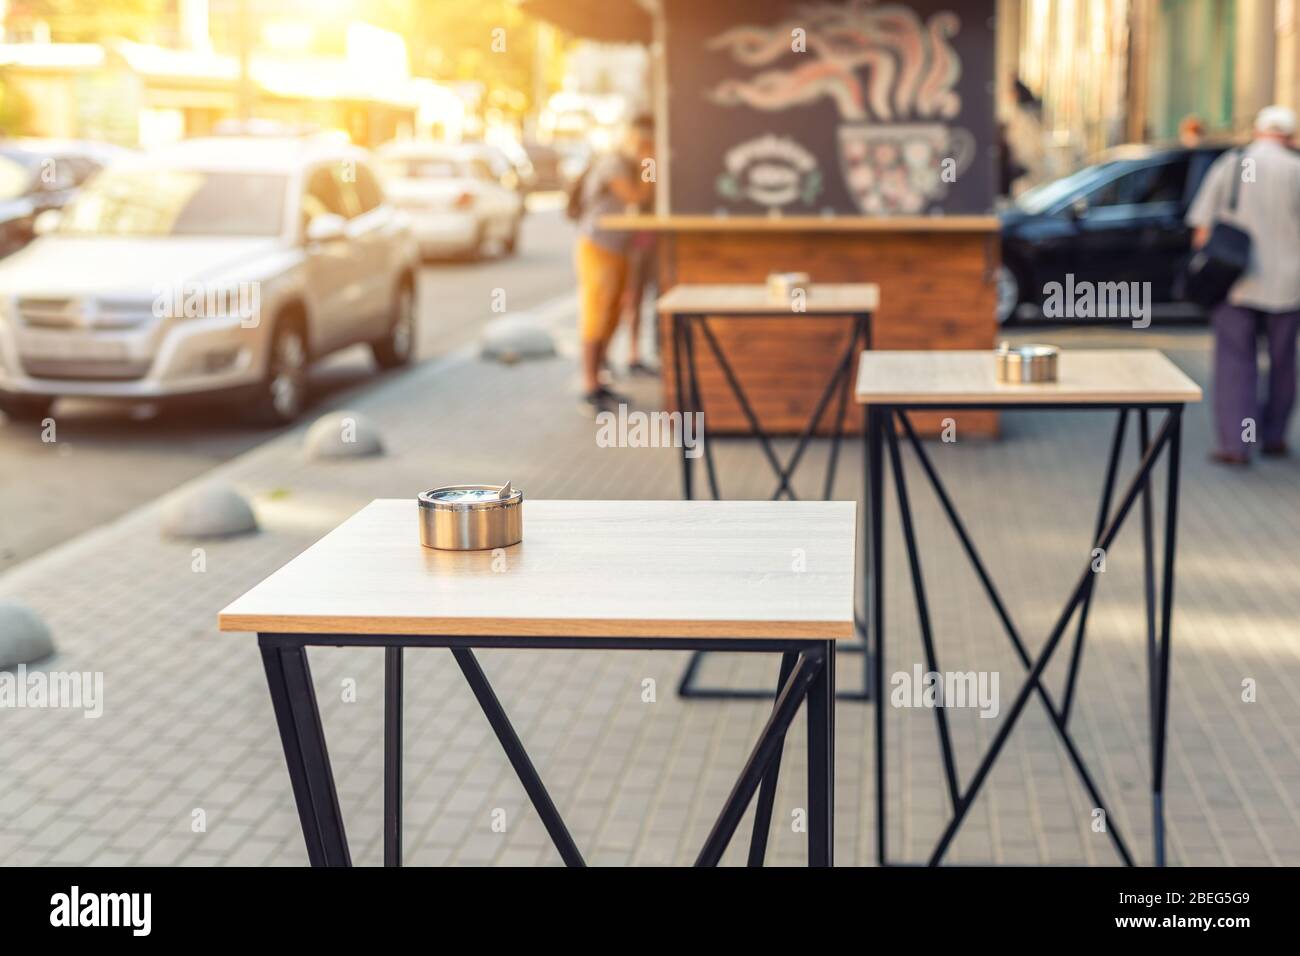 Rue européenne bistrot urbain café epmty tables sans personnes pendant la quarantaine. Snack-bar avec nourriture pour aller coucher de soleil ou lever de soleil le matin Banque D'Images